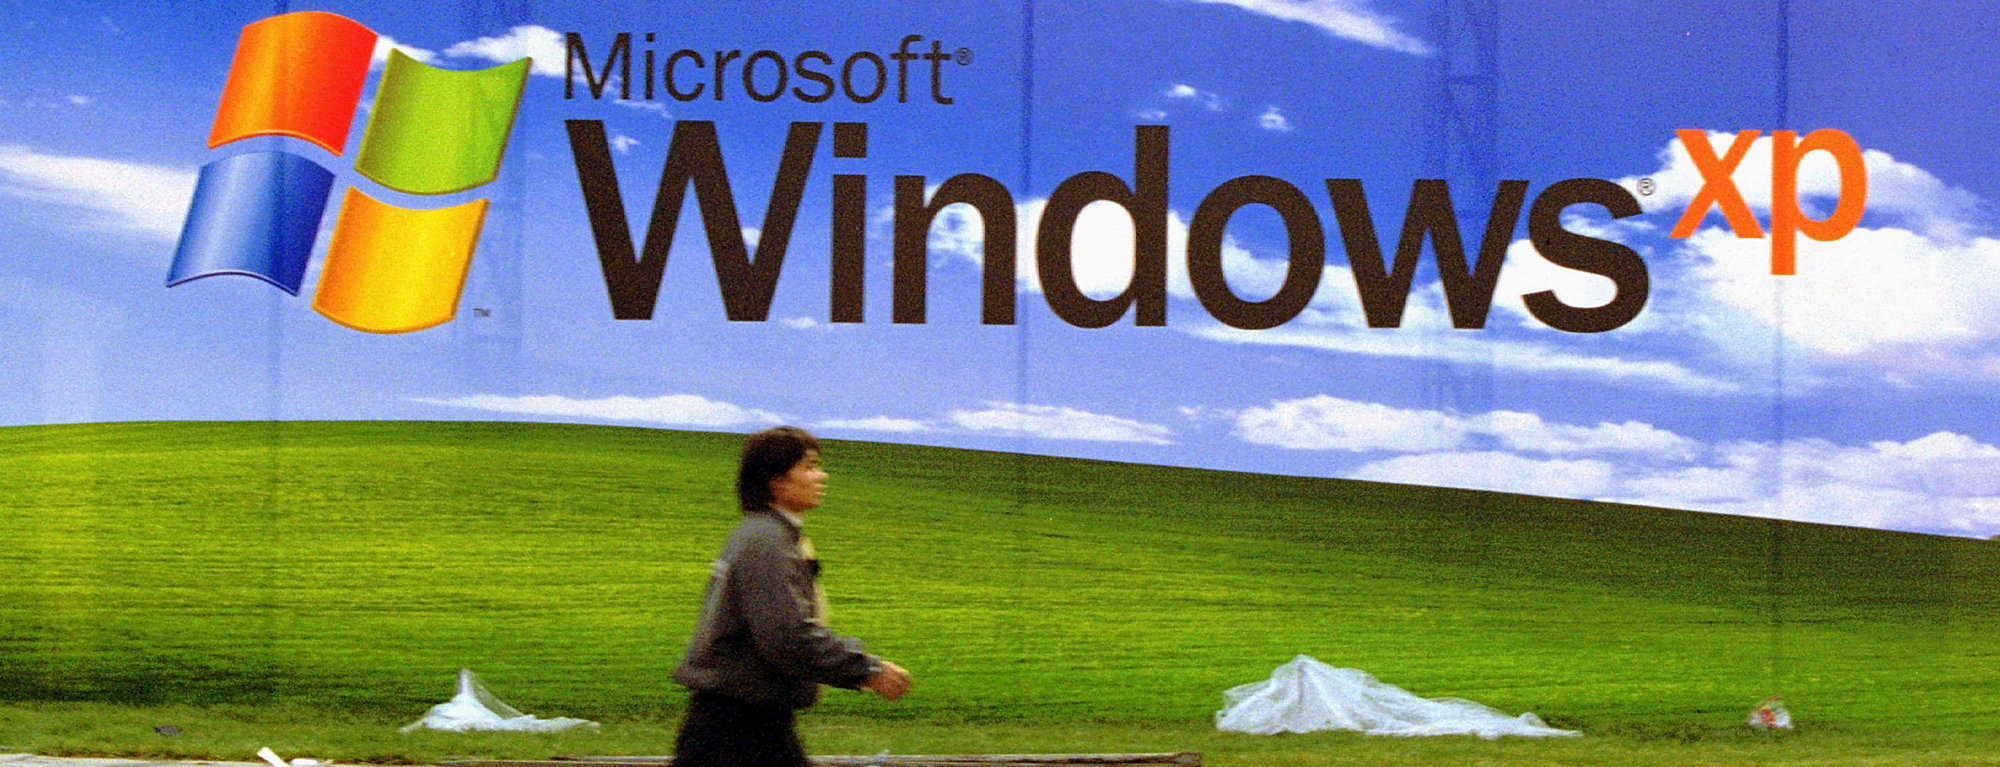 Download Windows XP Bliss 4K Wallpaper - MajorGeeks